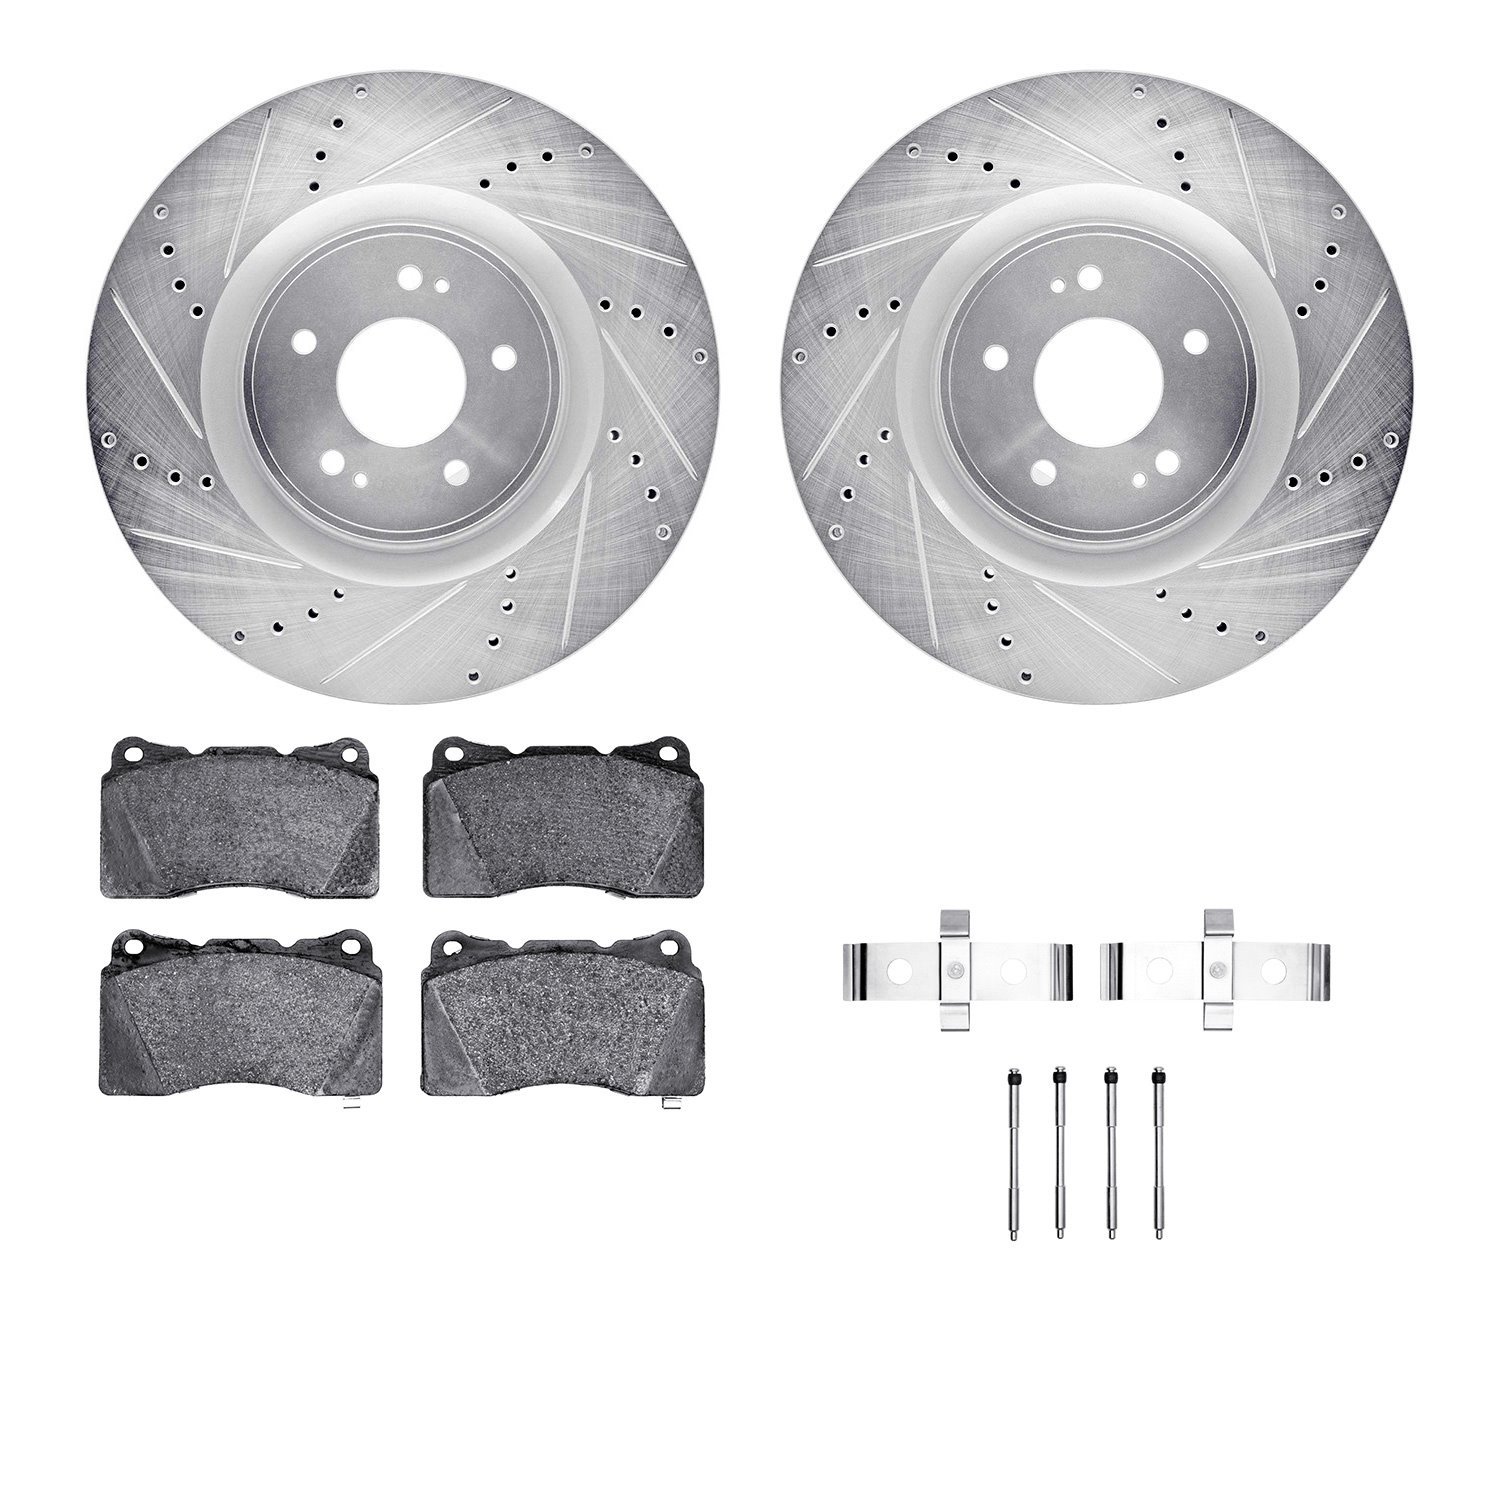 7612-72003 Drilled/Slotted Brake Rotors w/5000 Euro Ceramic Brake Pads Kit & Hardware [Silver], 2008-2015 Mitsubishi, Position: